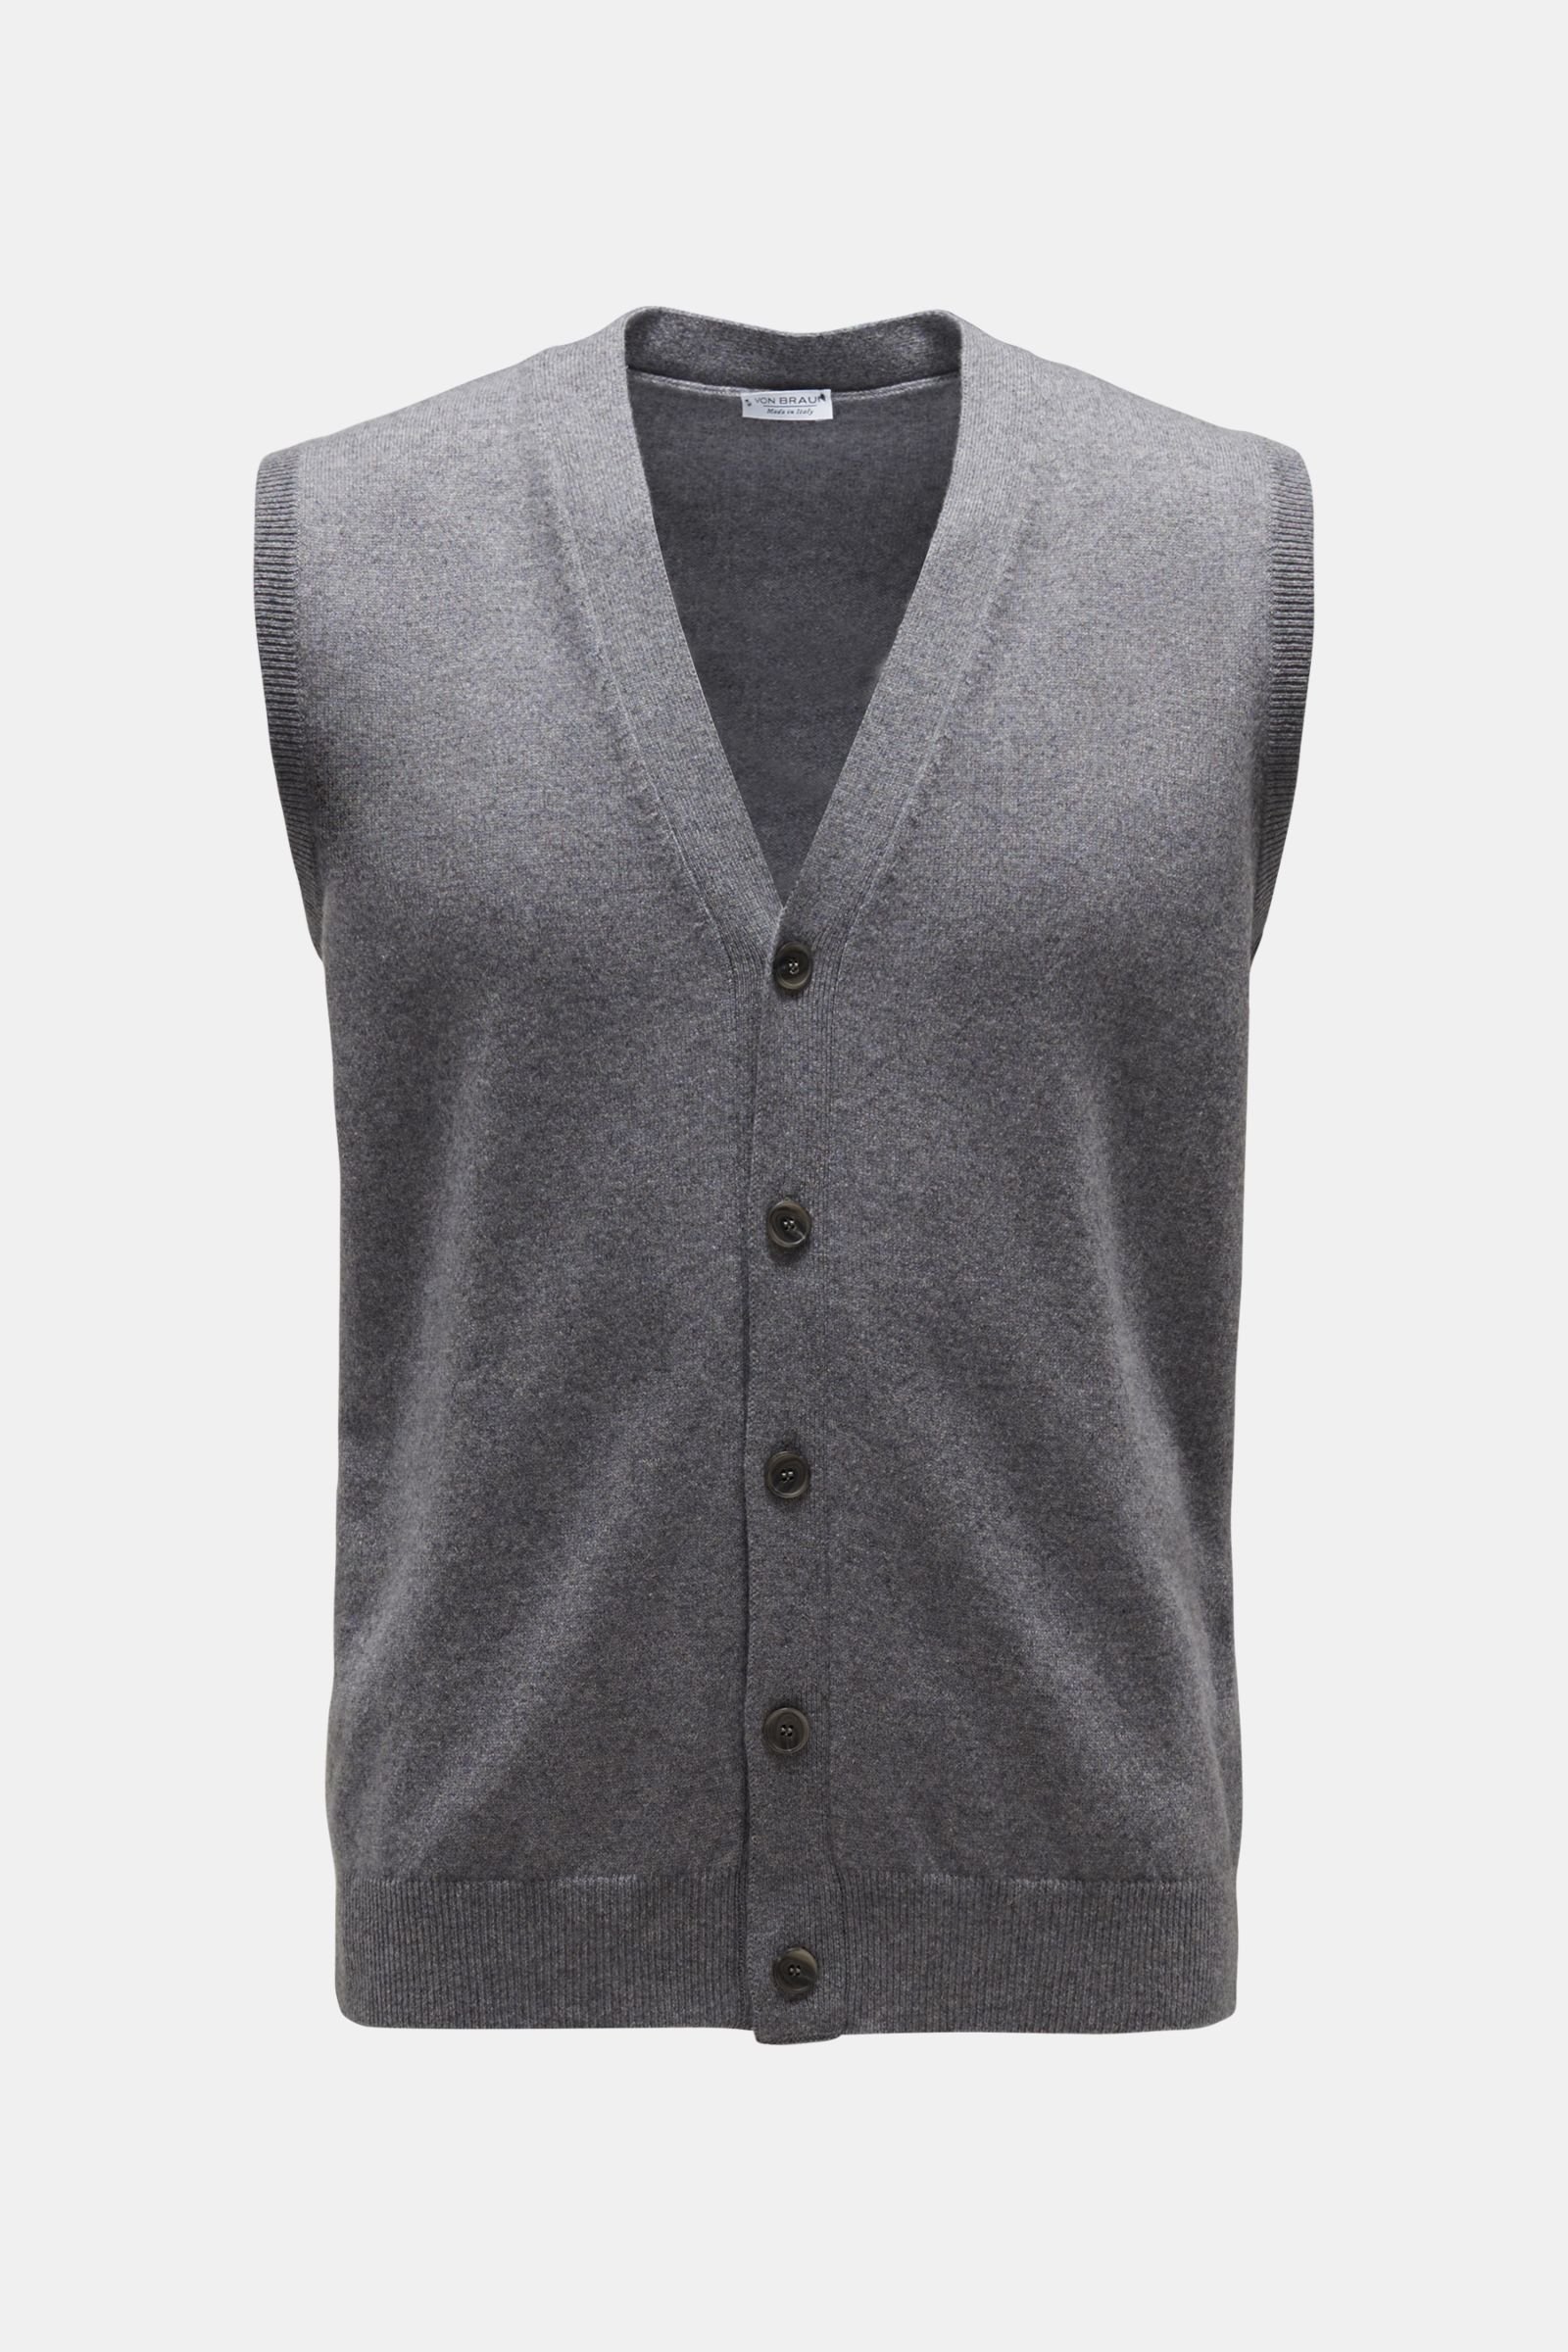 Cashmere knit waistcoat grey